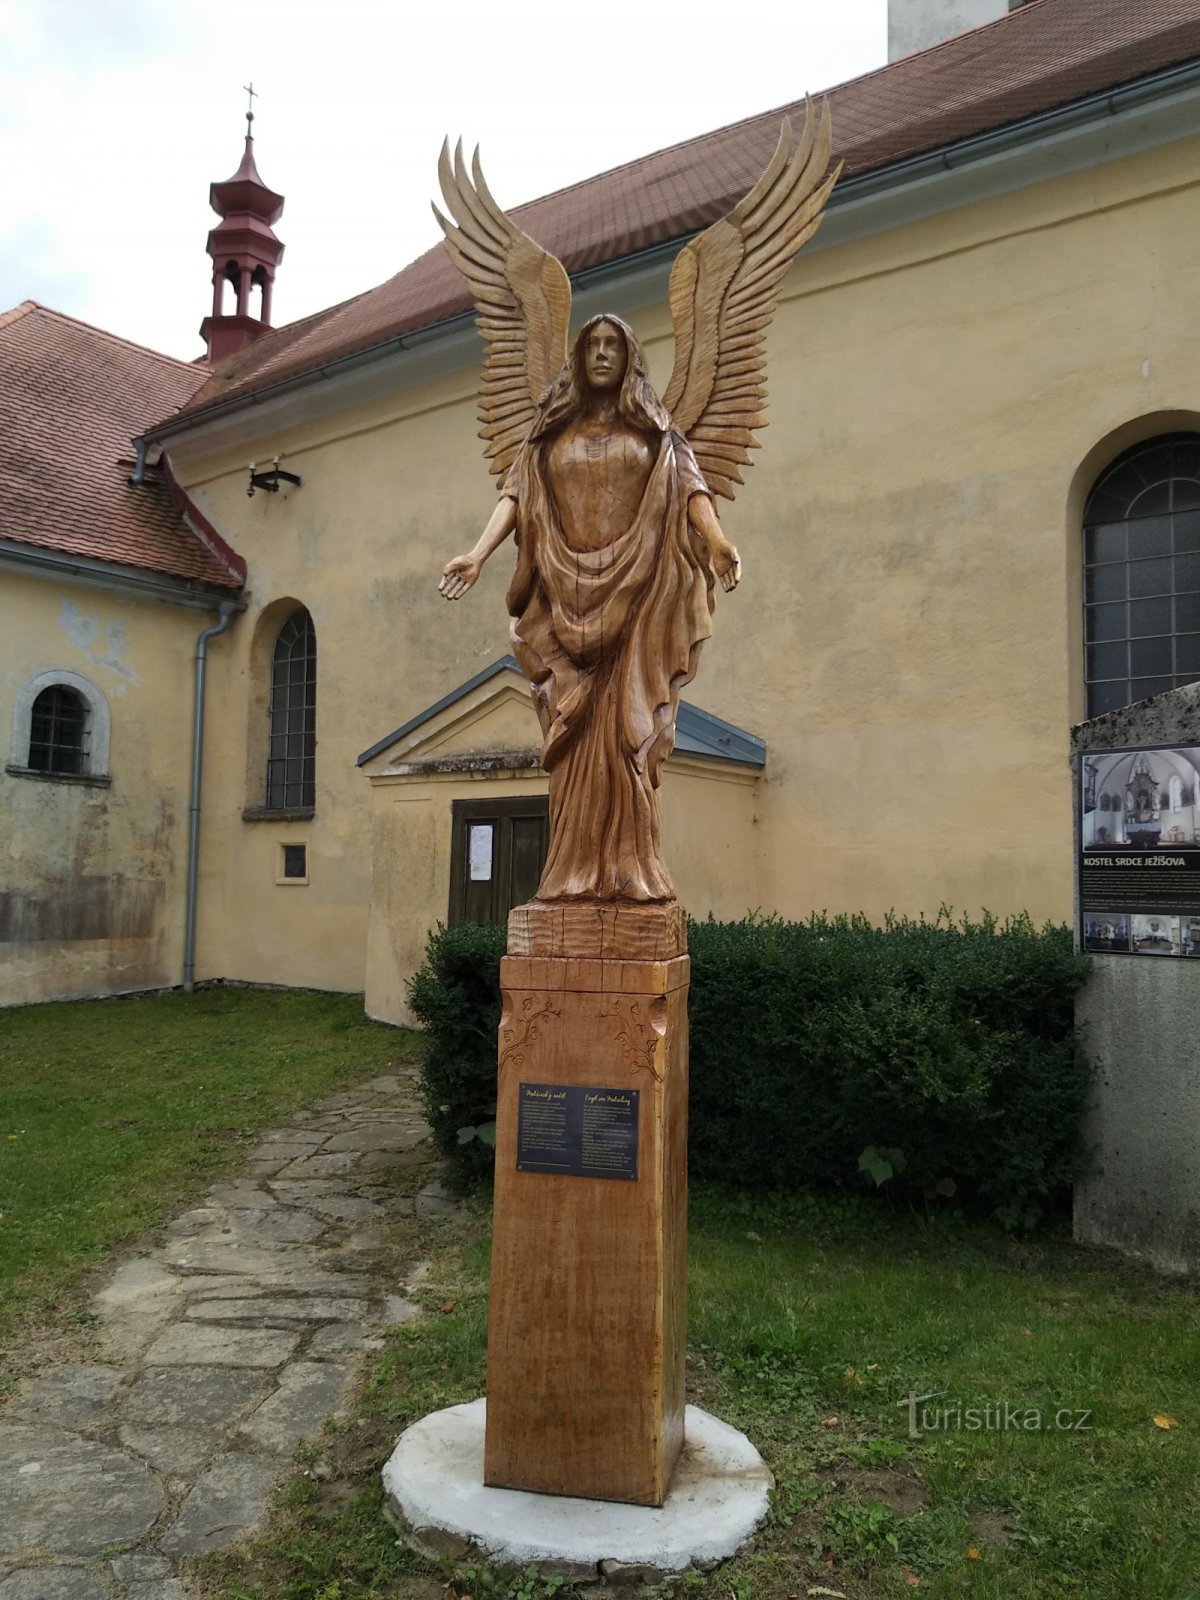 Malšin enkeli kirkon edessä